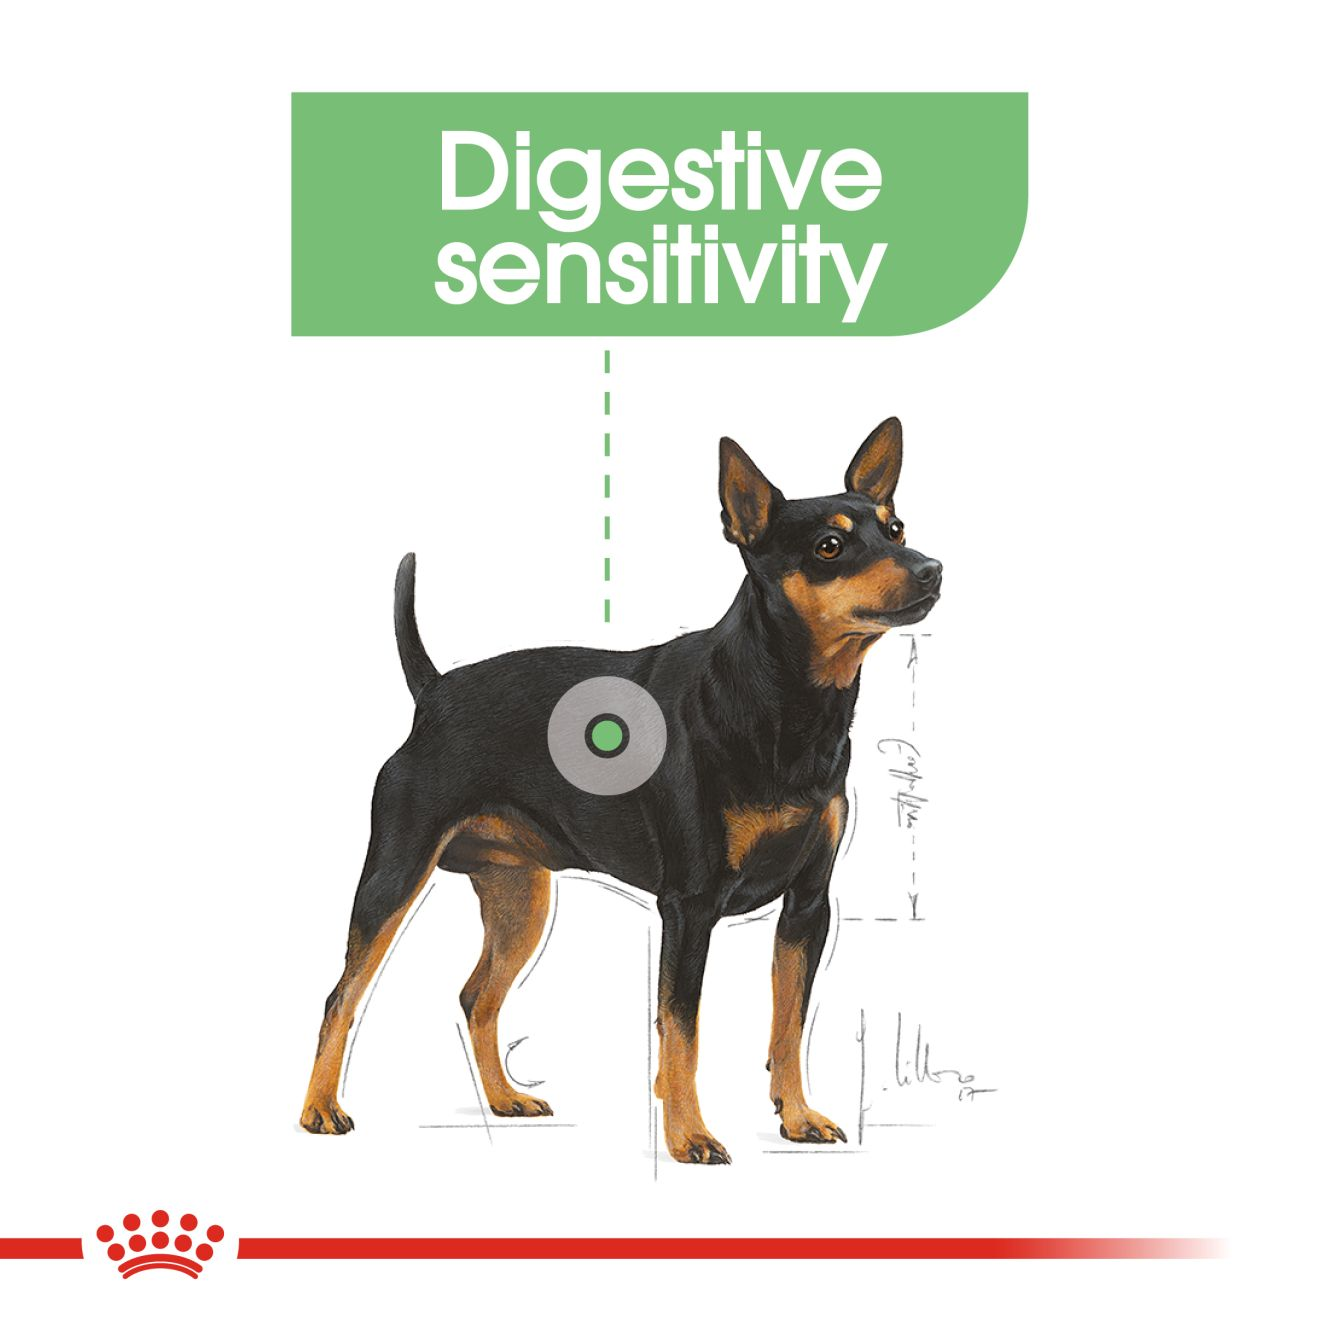 อาหารสุนัขโต ที่ต้องการดูแลระบบย่อยอาหาร ชนิดเปียก (DIGESTIVE CARE LOAF)